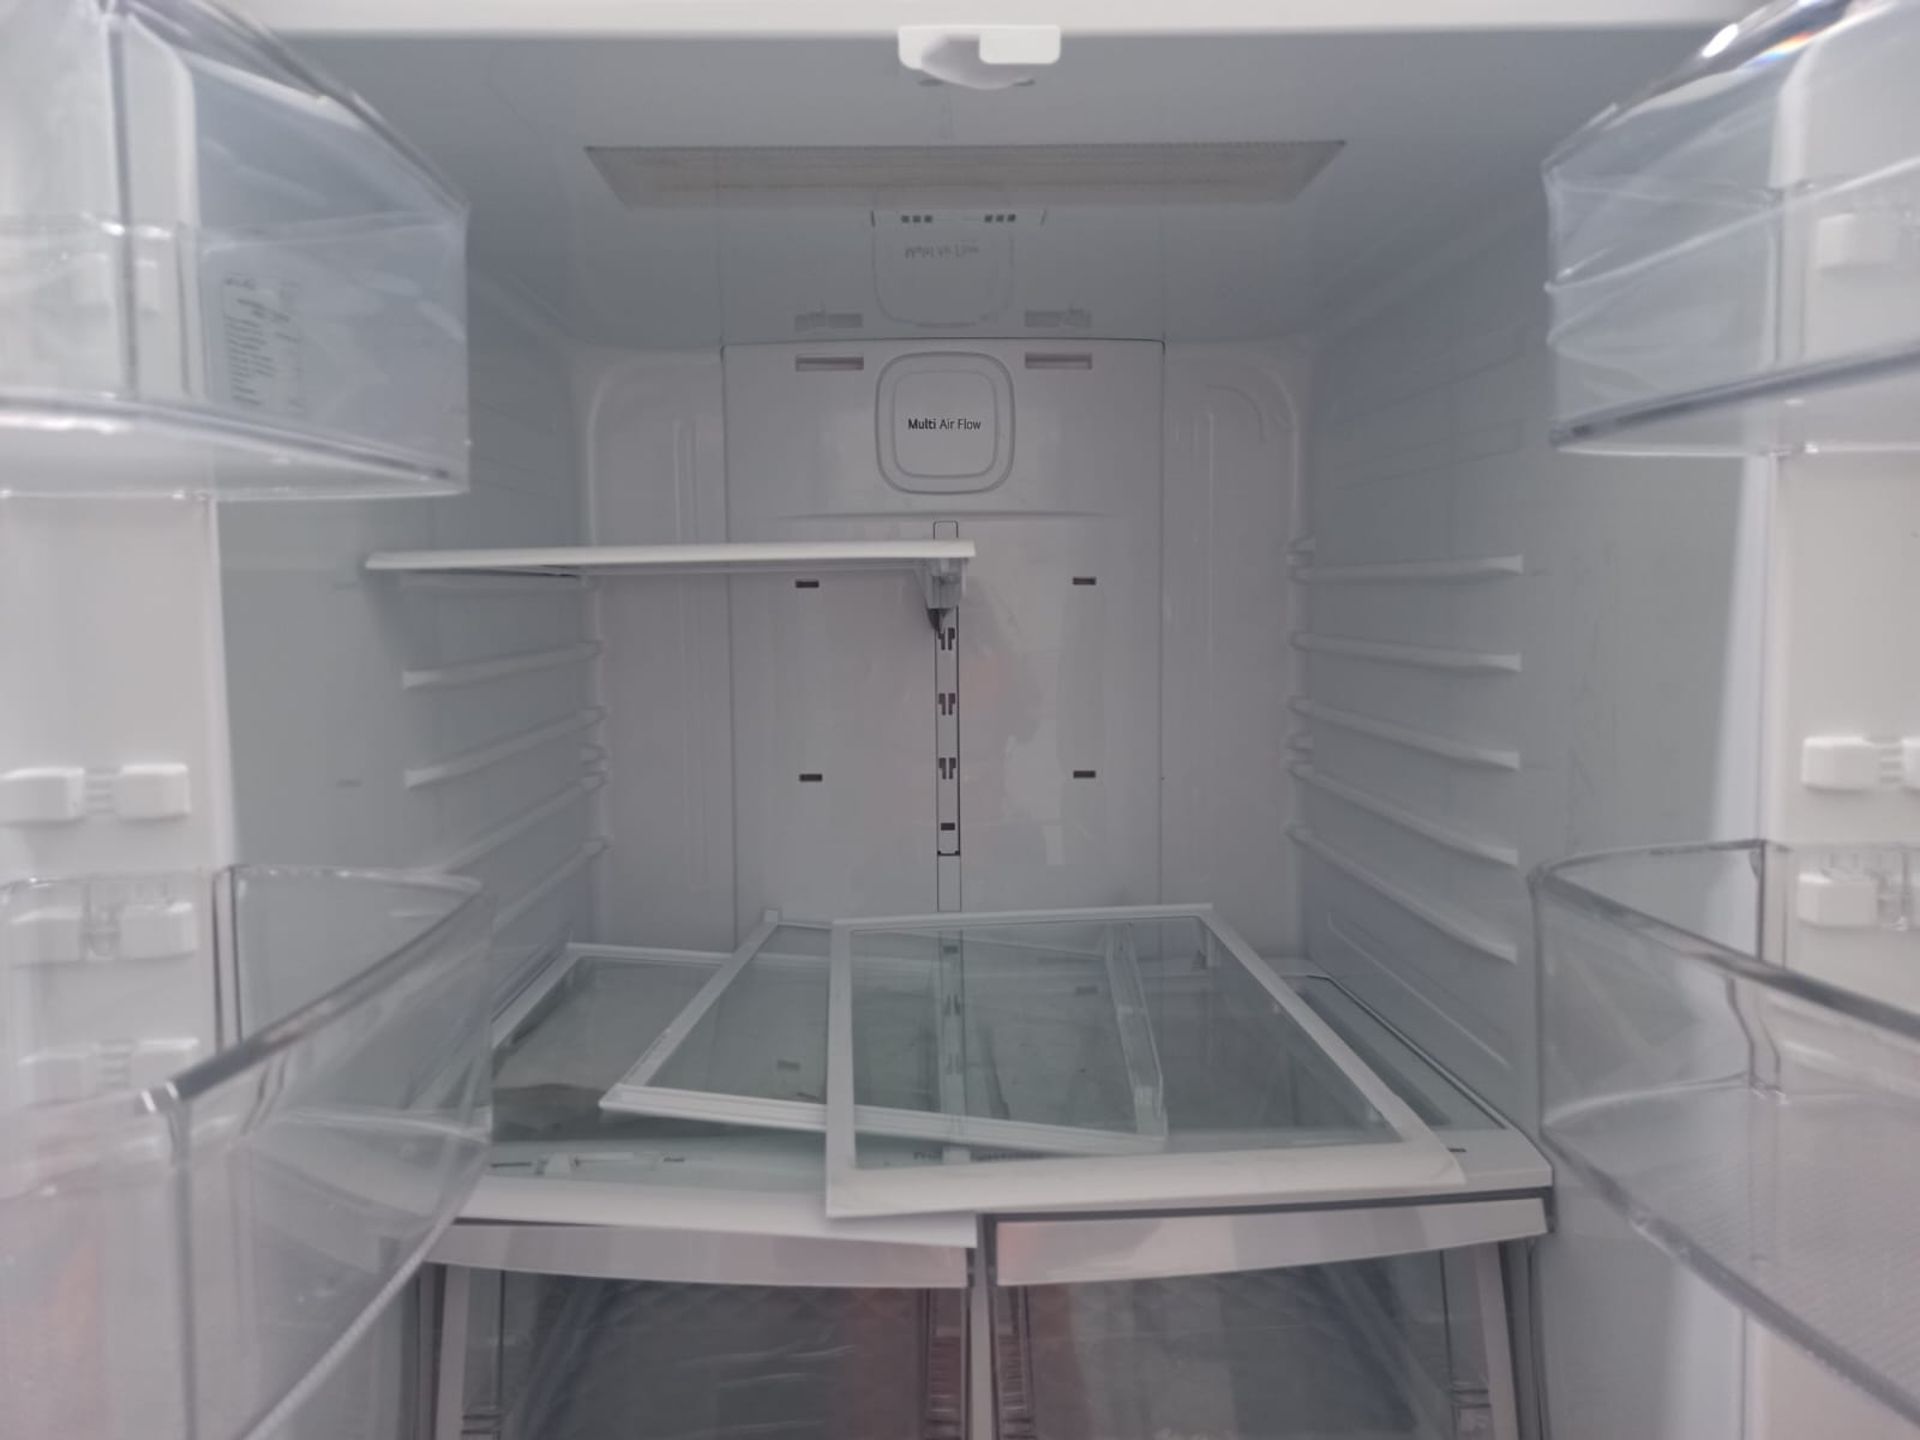 Lote De 2 Refrigeradores: 1 Refrigerador Marca LG, 1 Refrigerador Marca Winia, Distintos Modelos - Image 8 of 18